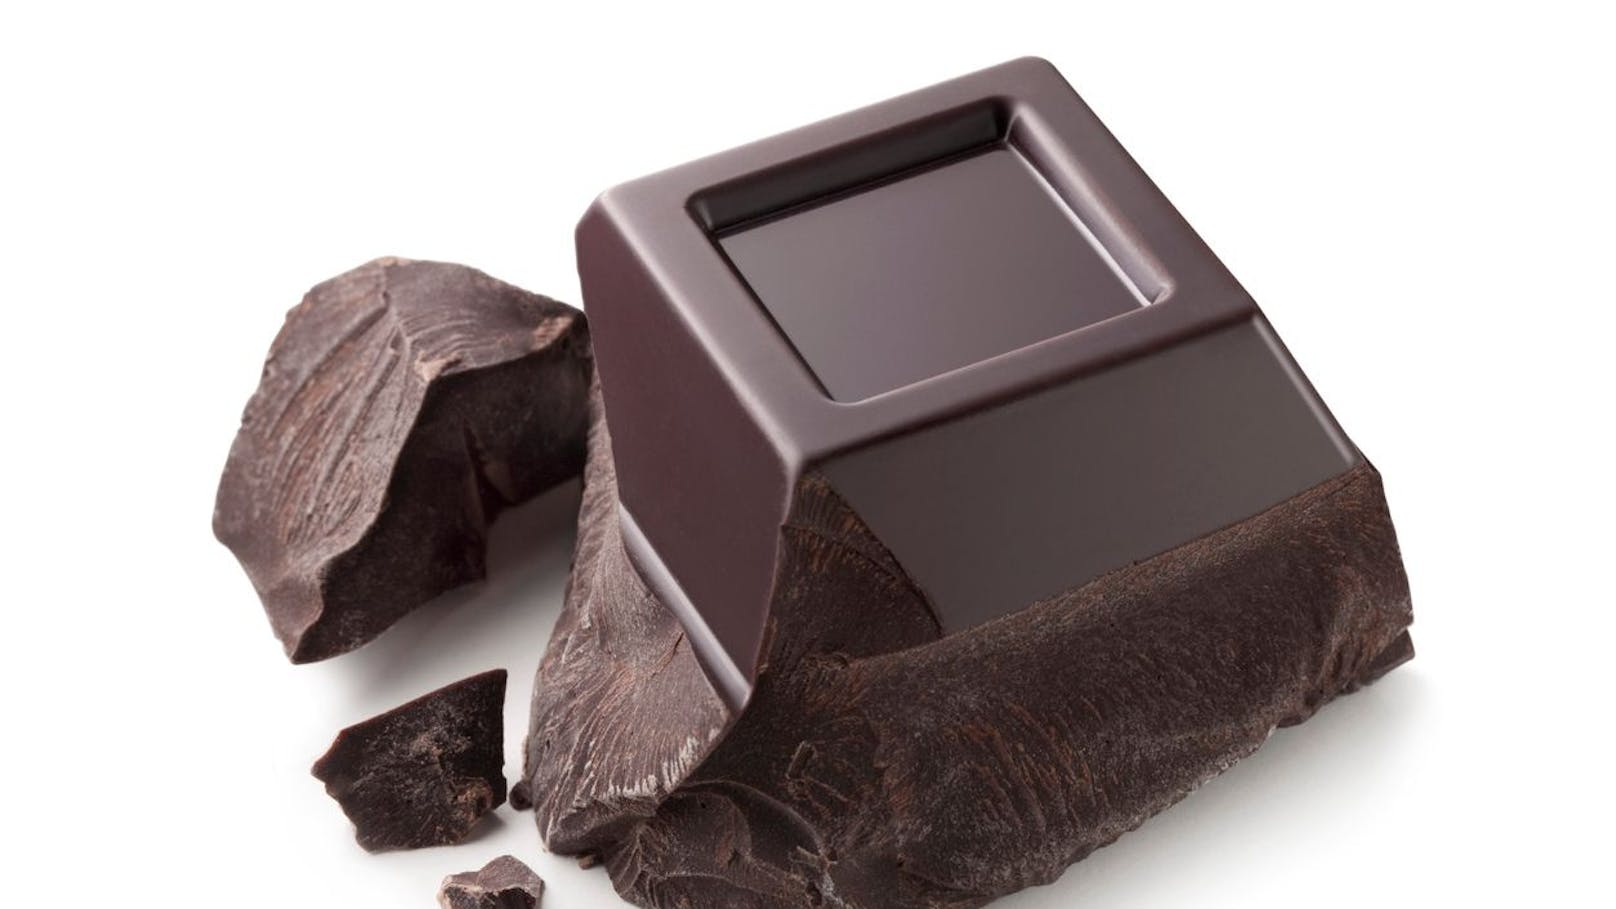 Am besten ist <strong>Schokolade mit einem Kakaoanteil von über 70%</strong>. Diese enthält in der Regel sehr wenig Zucker und hat zudem viele gesundheitsfördernde Eigenschaften. In der Kakaobohne sind viele Flavonoide enthalten, die entzündungshemmend wirken (z. B. das berühmte Epigallocatechingallat (EGCG) aus Grüntee).